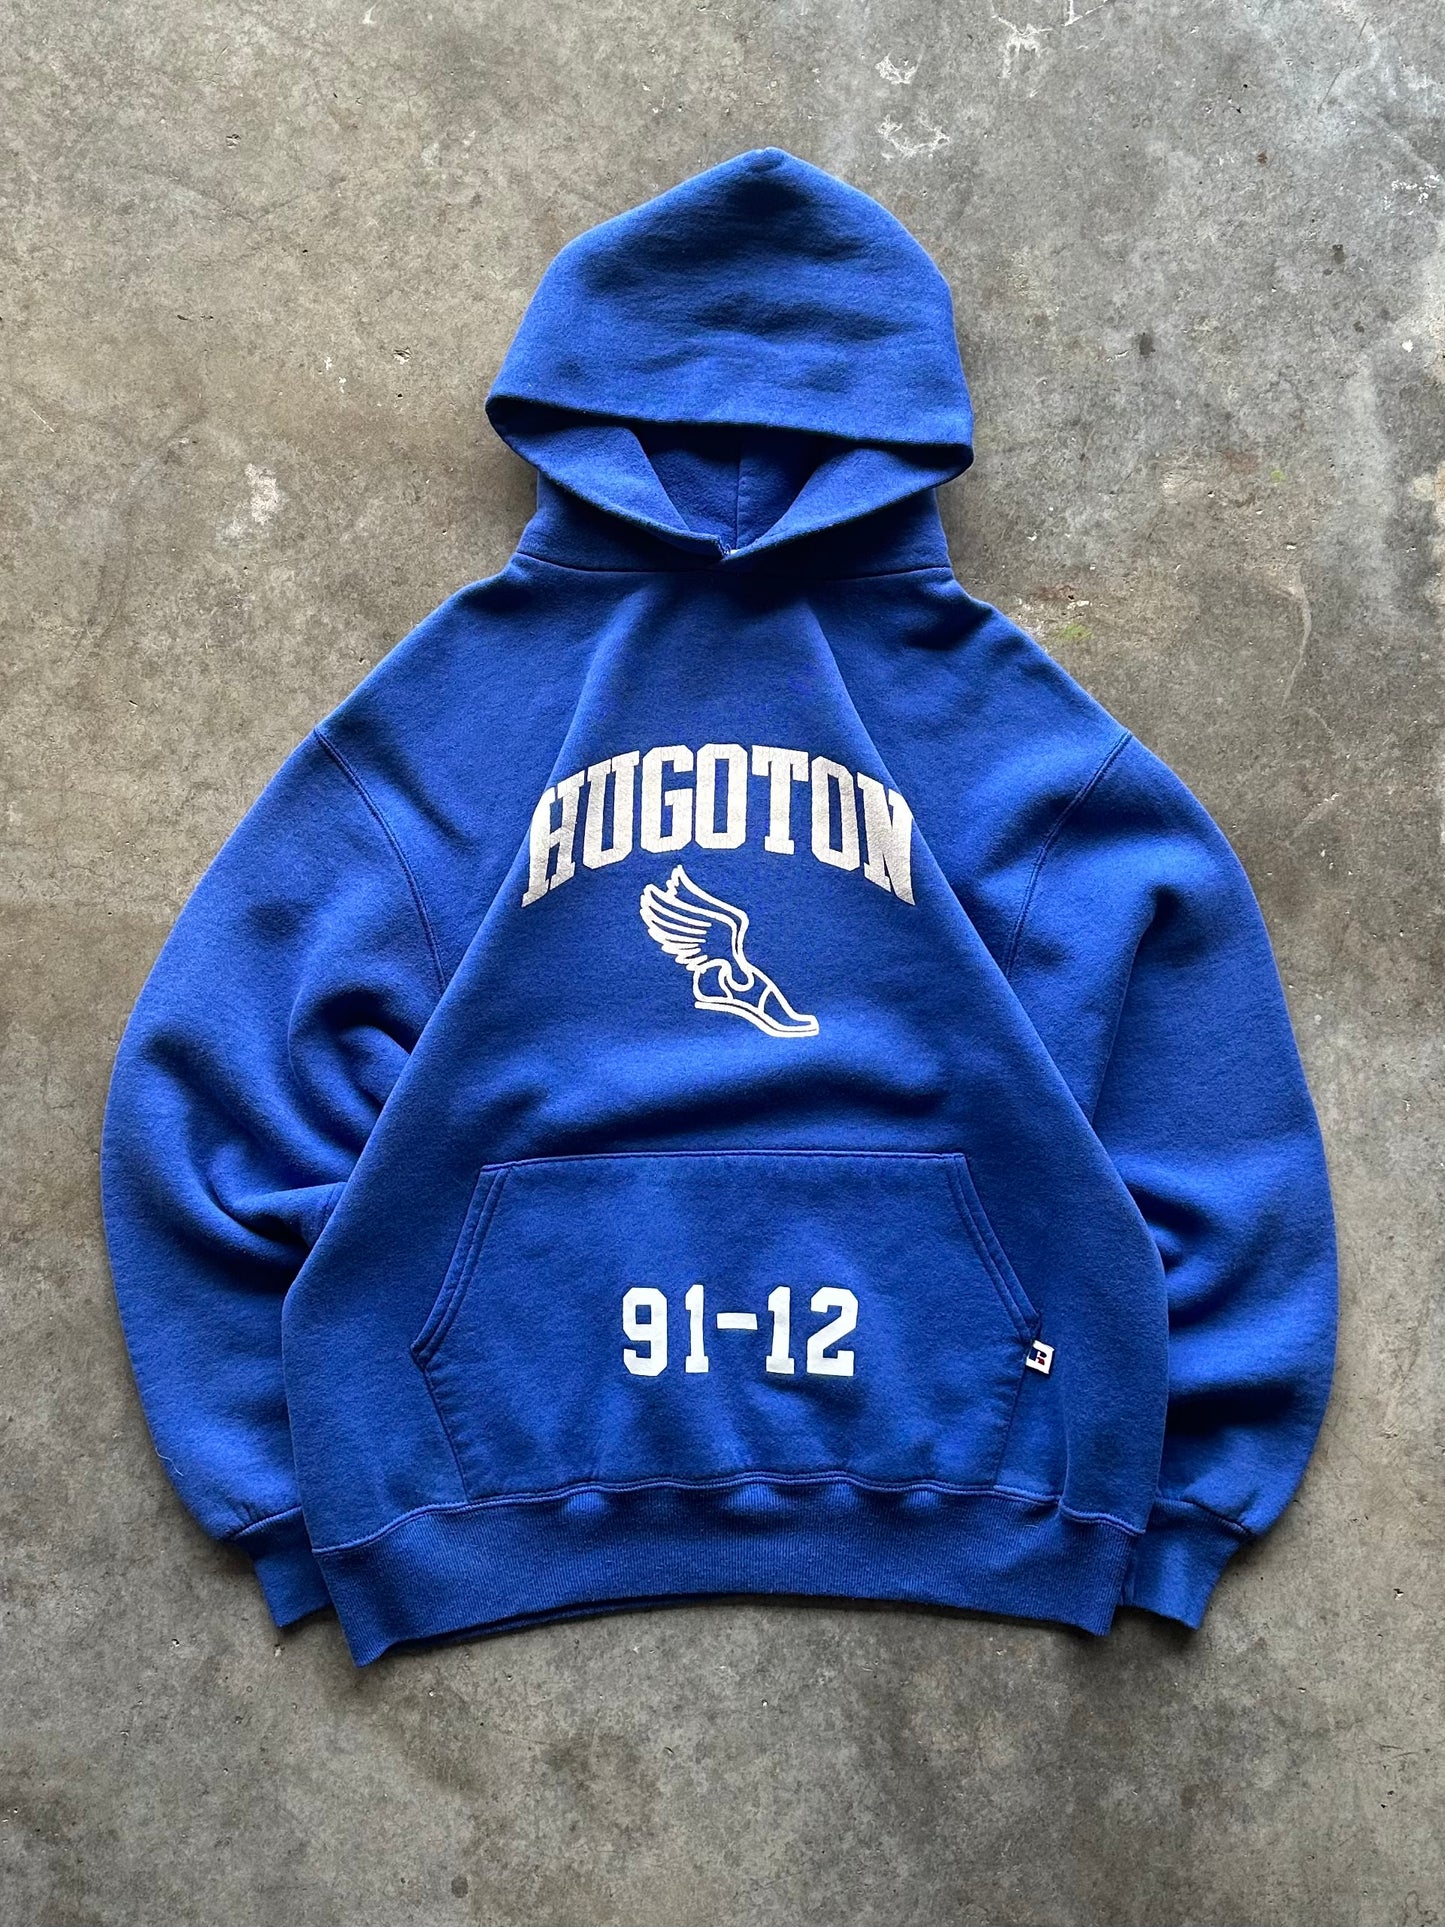 (L) Vintage Hugoton Athletics Hoodie